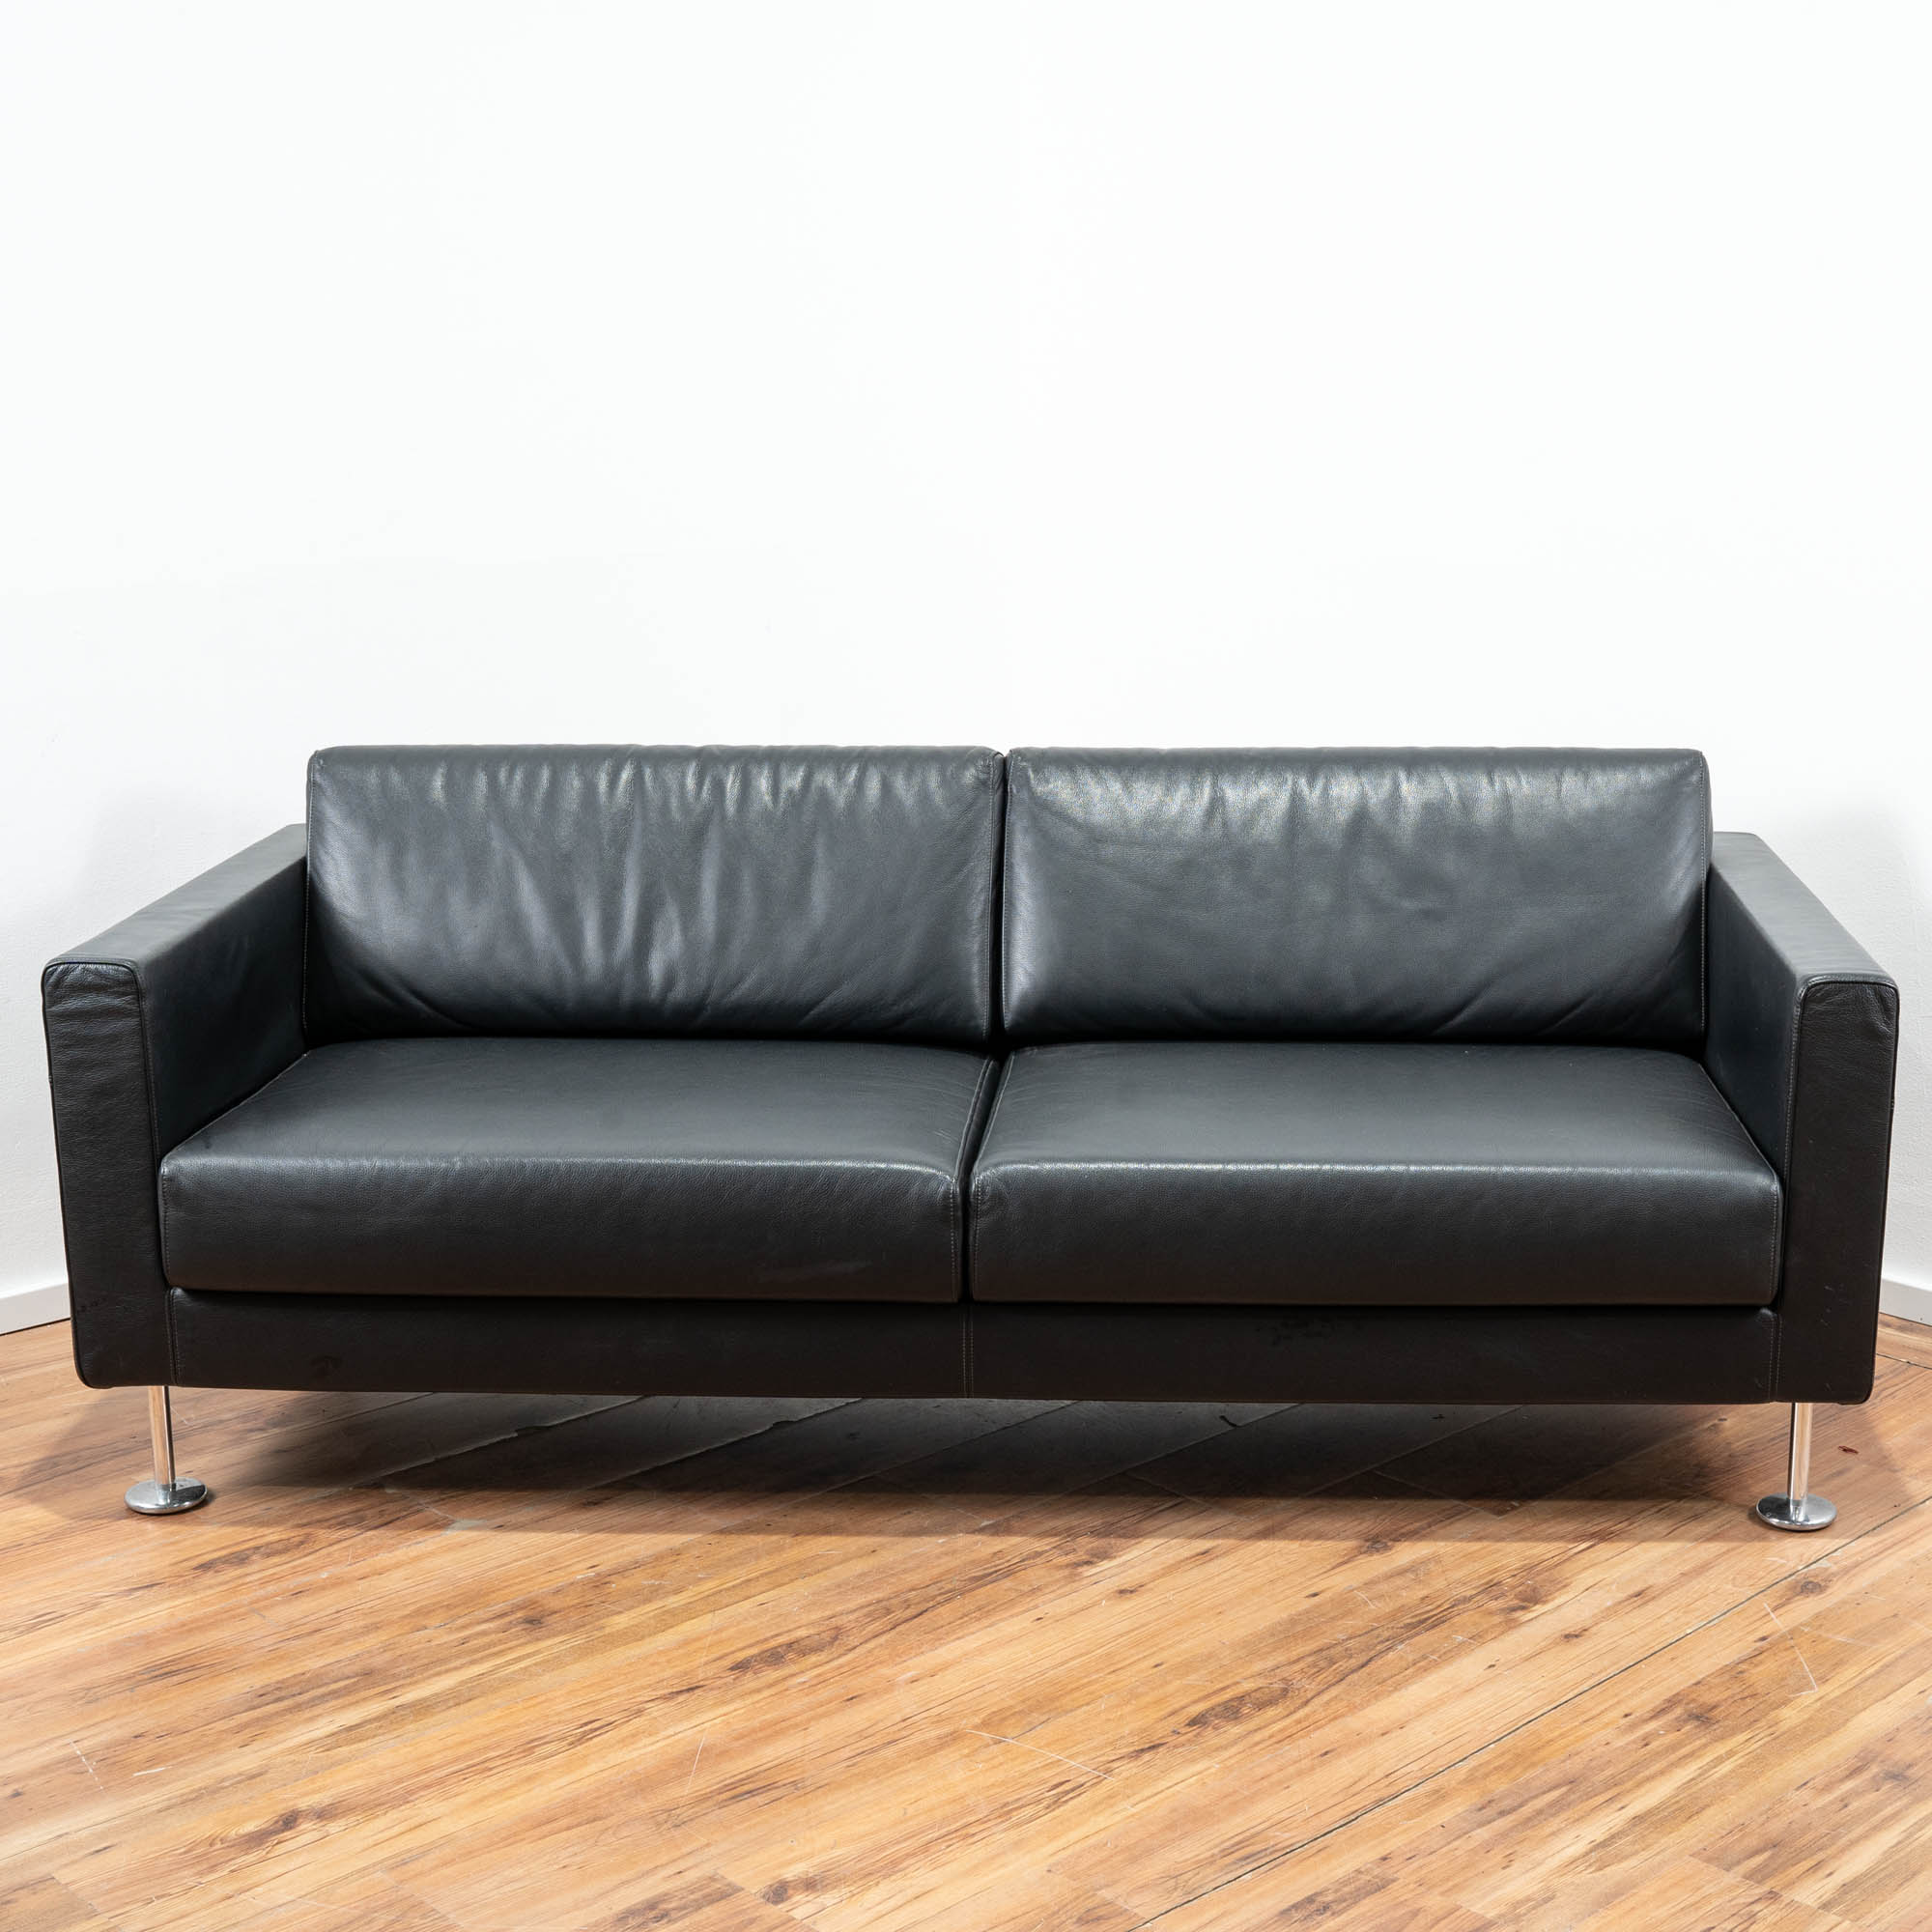 Vitra Park Sofa Leder schwarz 195 x 85 cm - 4-Fußgestell mit Tellerfüßen 